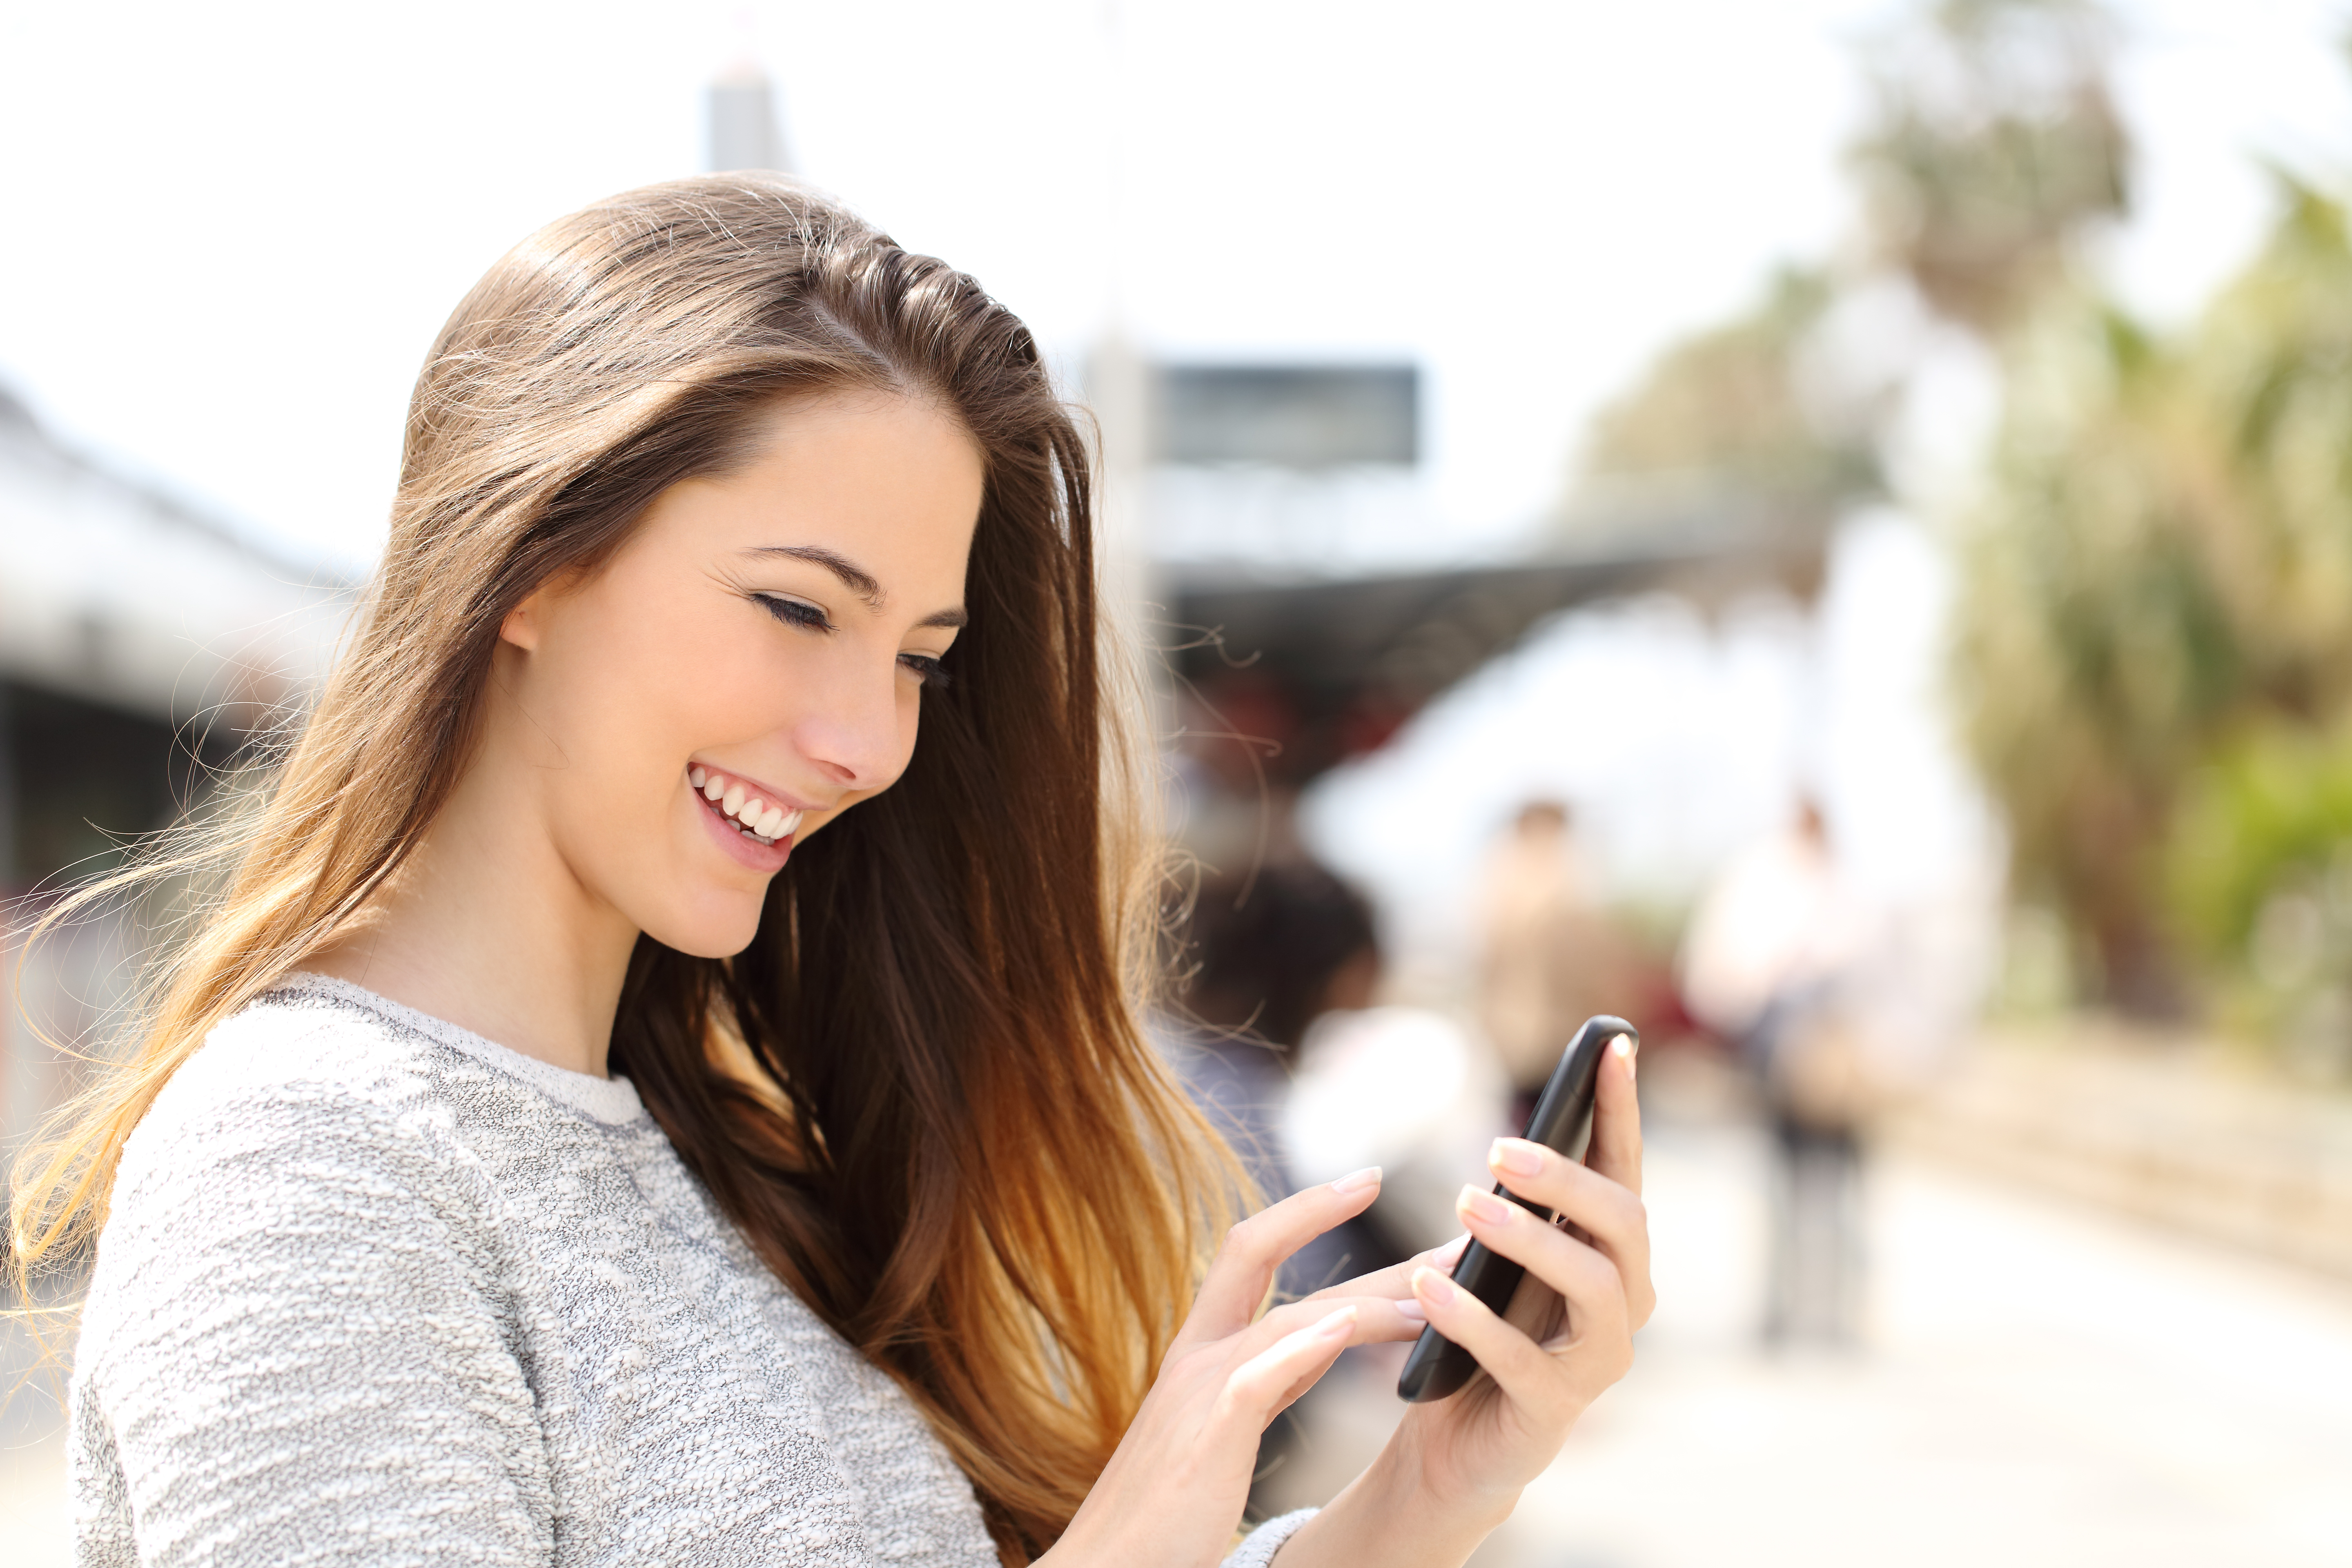 Une jeune fille heureuse qui utilise son smartphone tout en marchant | Source : Shutterstock